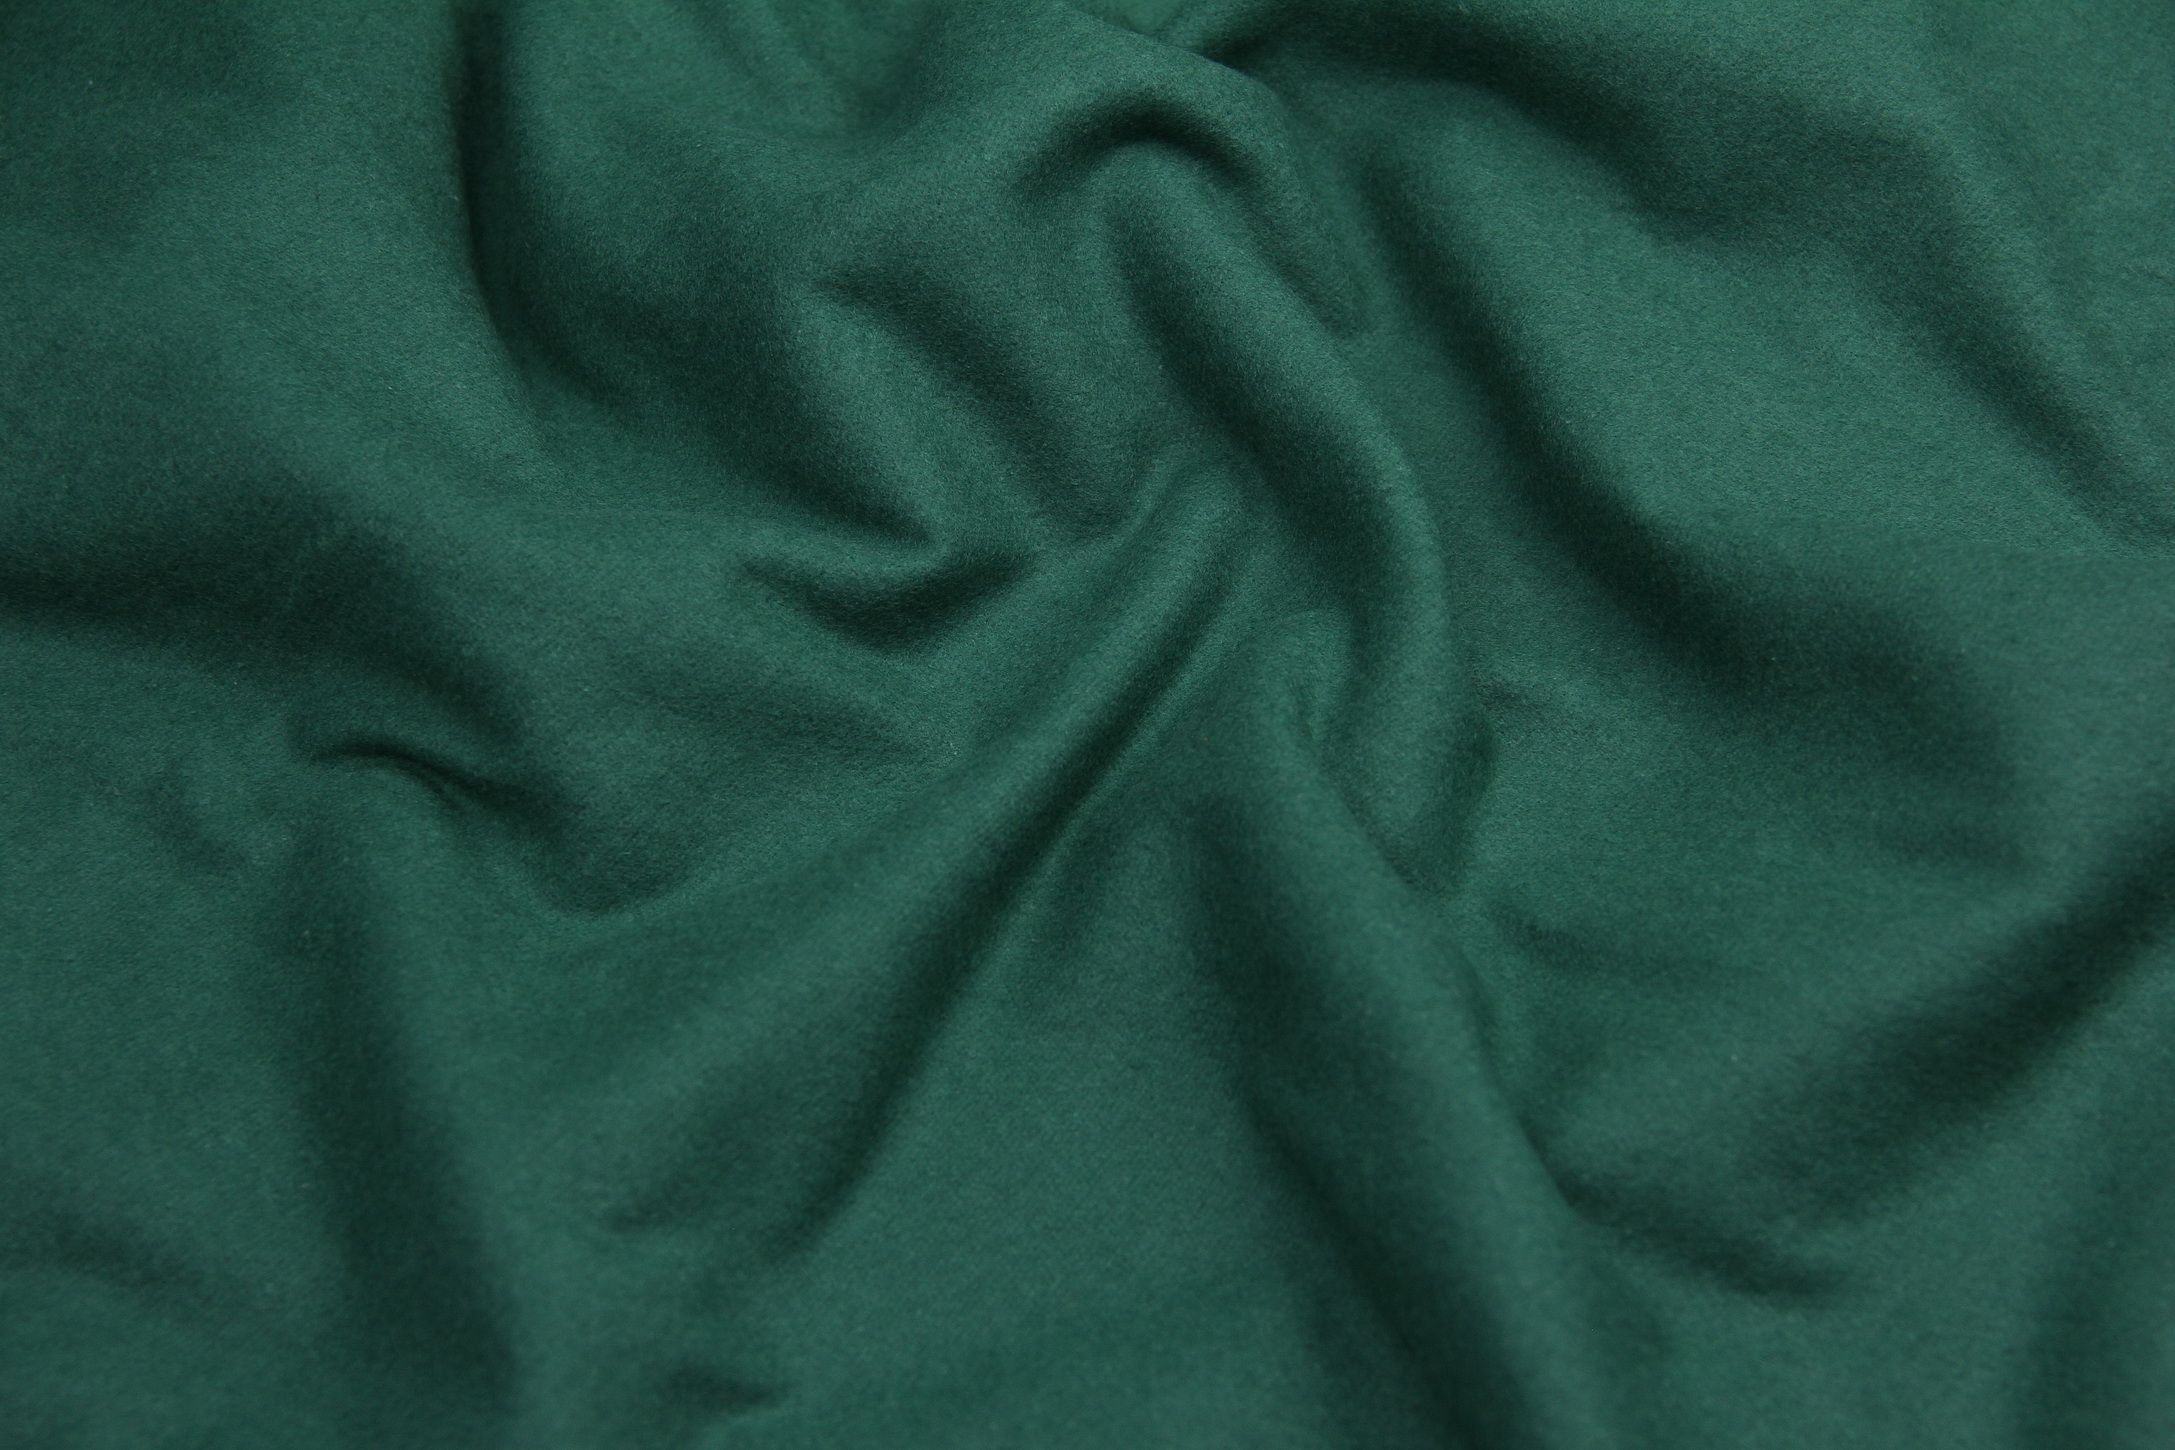 Ткань Фланель Зеленый мох, Турция, ширина 240 см, плотность 160 г/м2